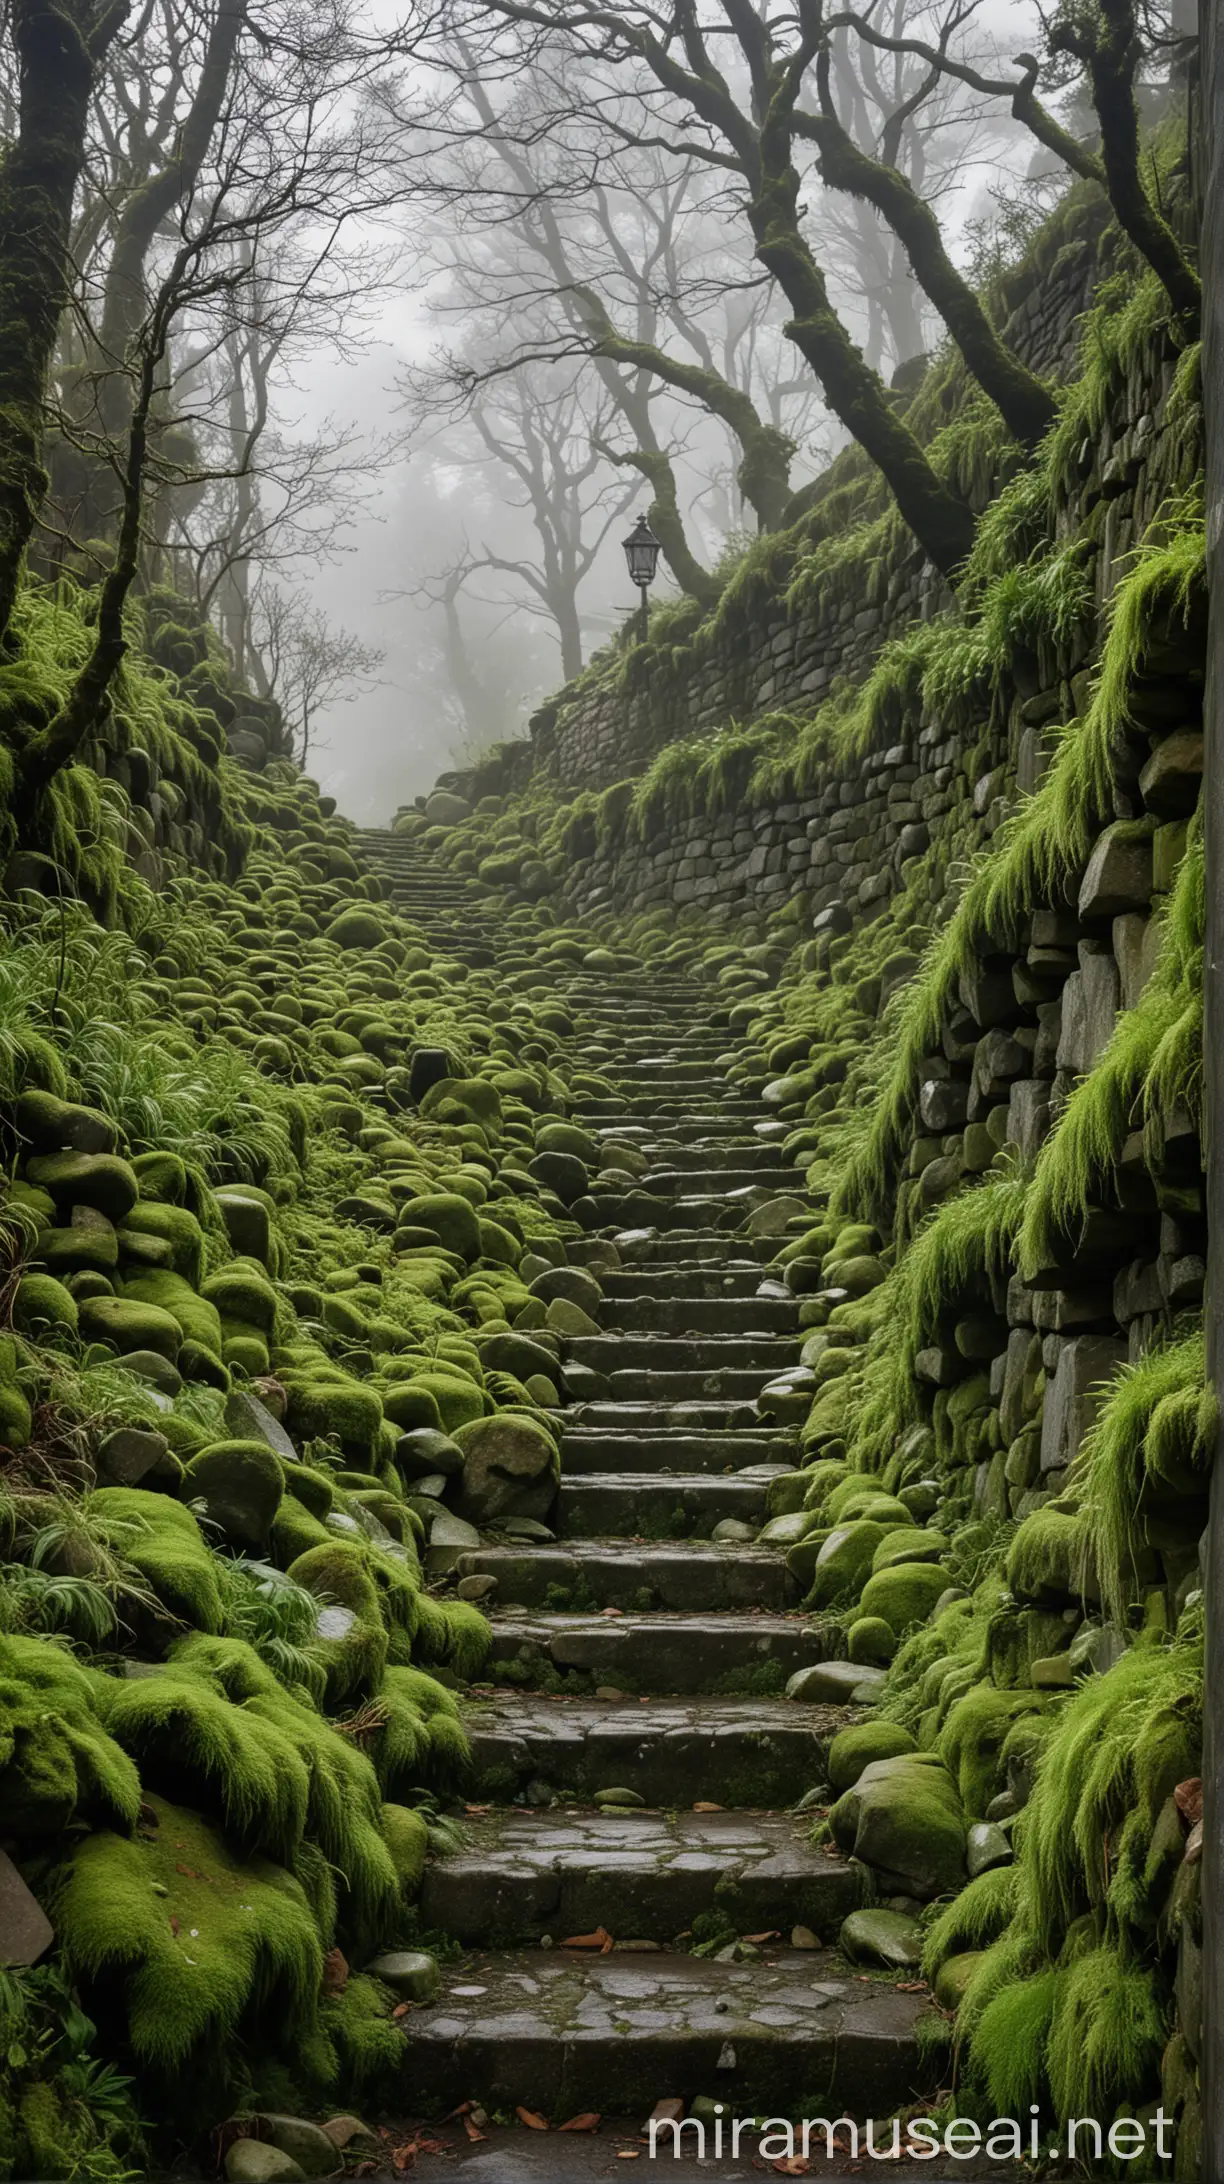 Unas escaleras de piedra cubiertas de musgo verde que vayan hacia una montaña a lo lejos hacia abajo, alrededor con piedras formando un callejón y árboles con hojas verdes con una ligera llovizna y el clima frío con un poco de niebla, nubes oscuras